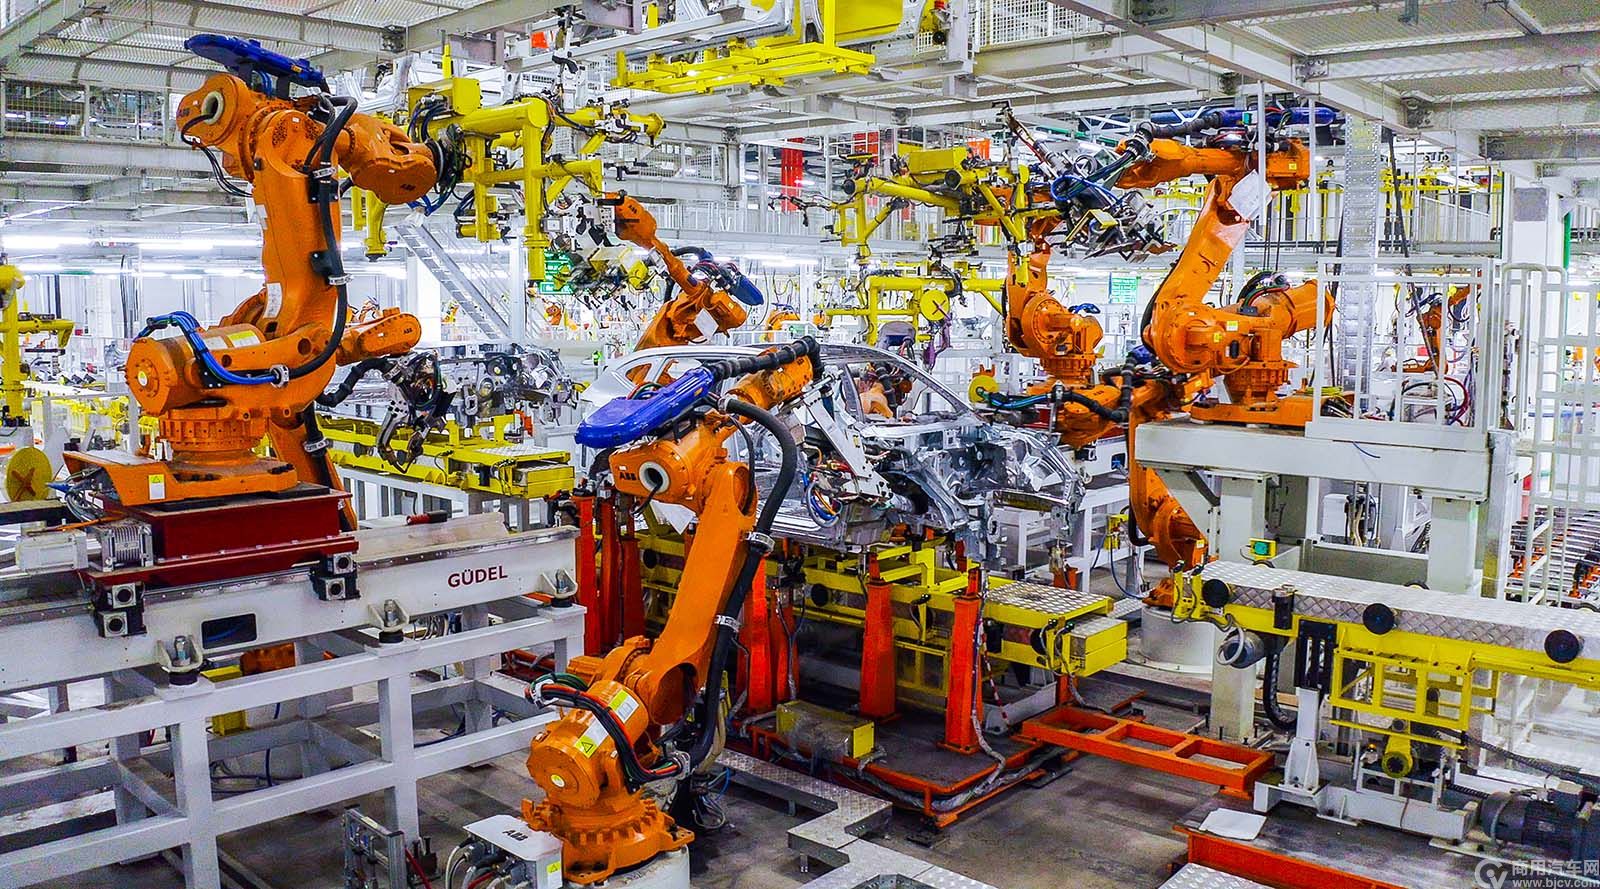 “灯塔工厂”、无人化工厂和智能工厂等新型工厂大量涌现——中国迅速拥抱智能化浪潮